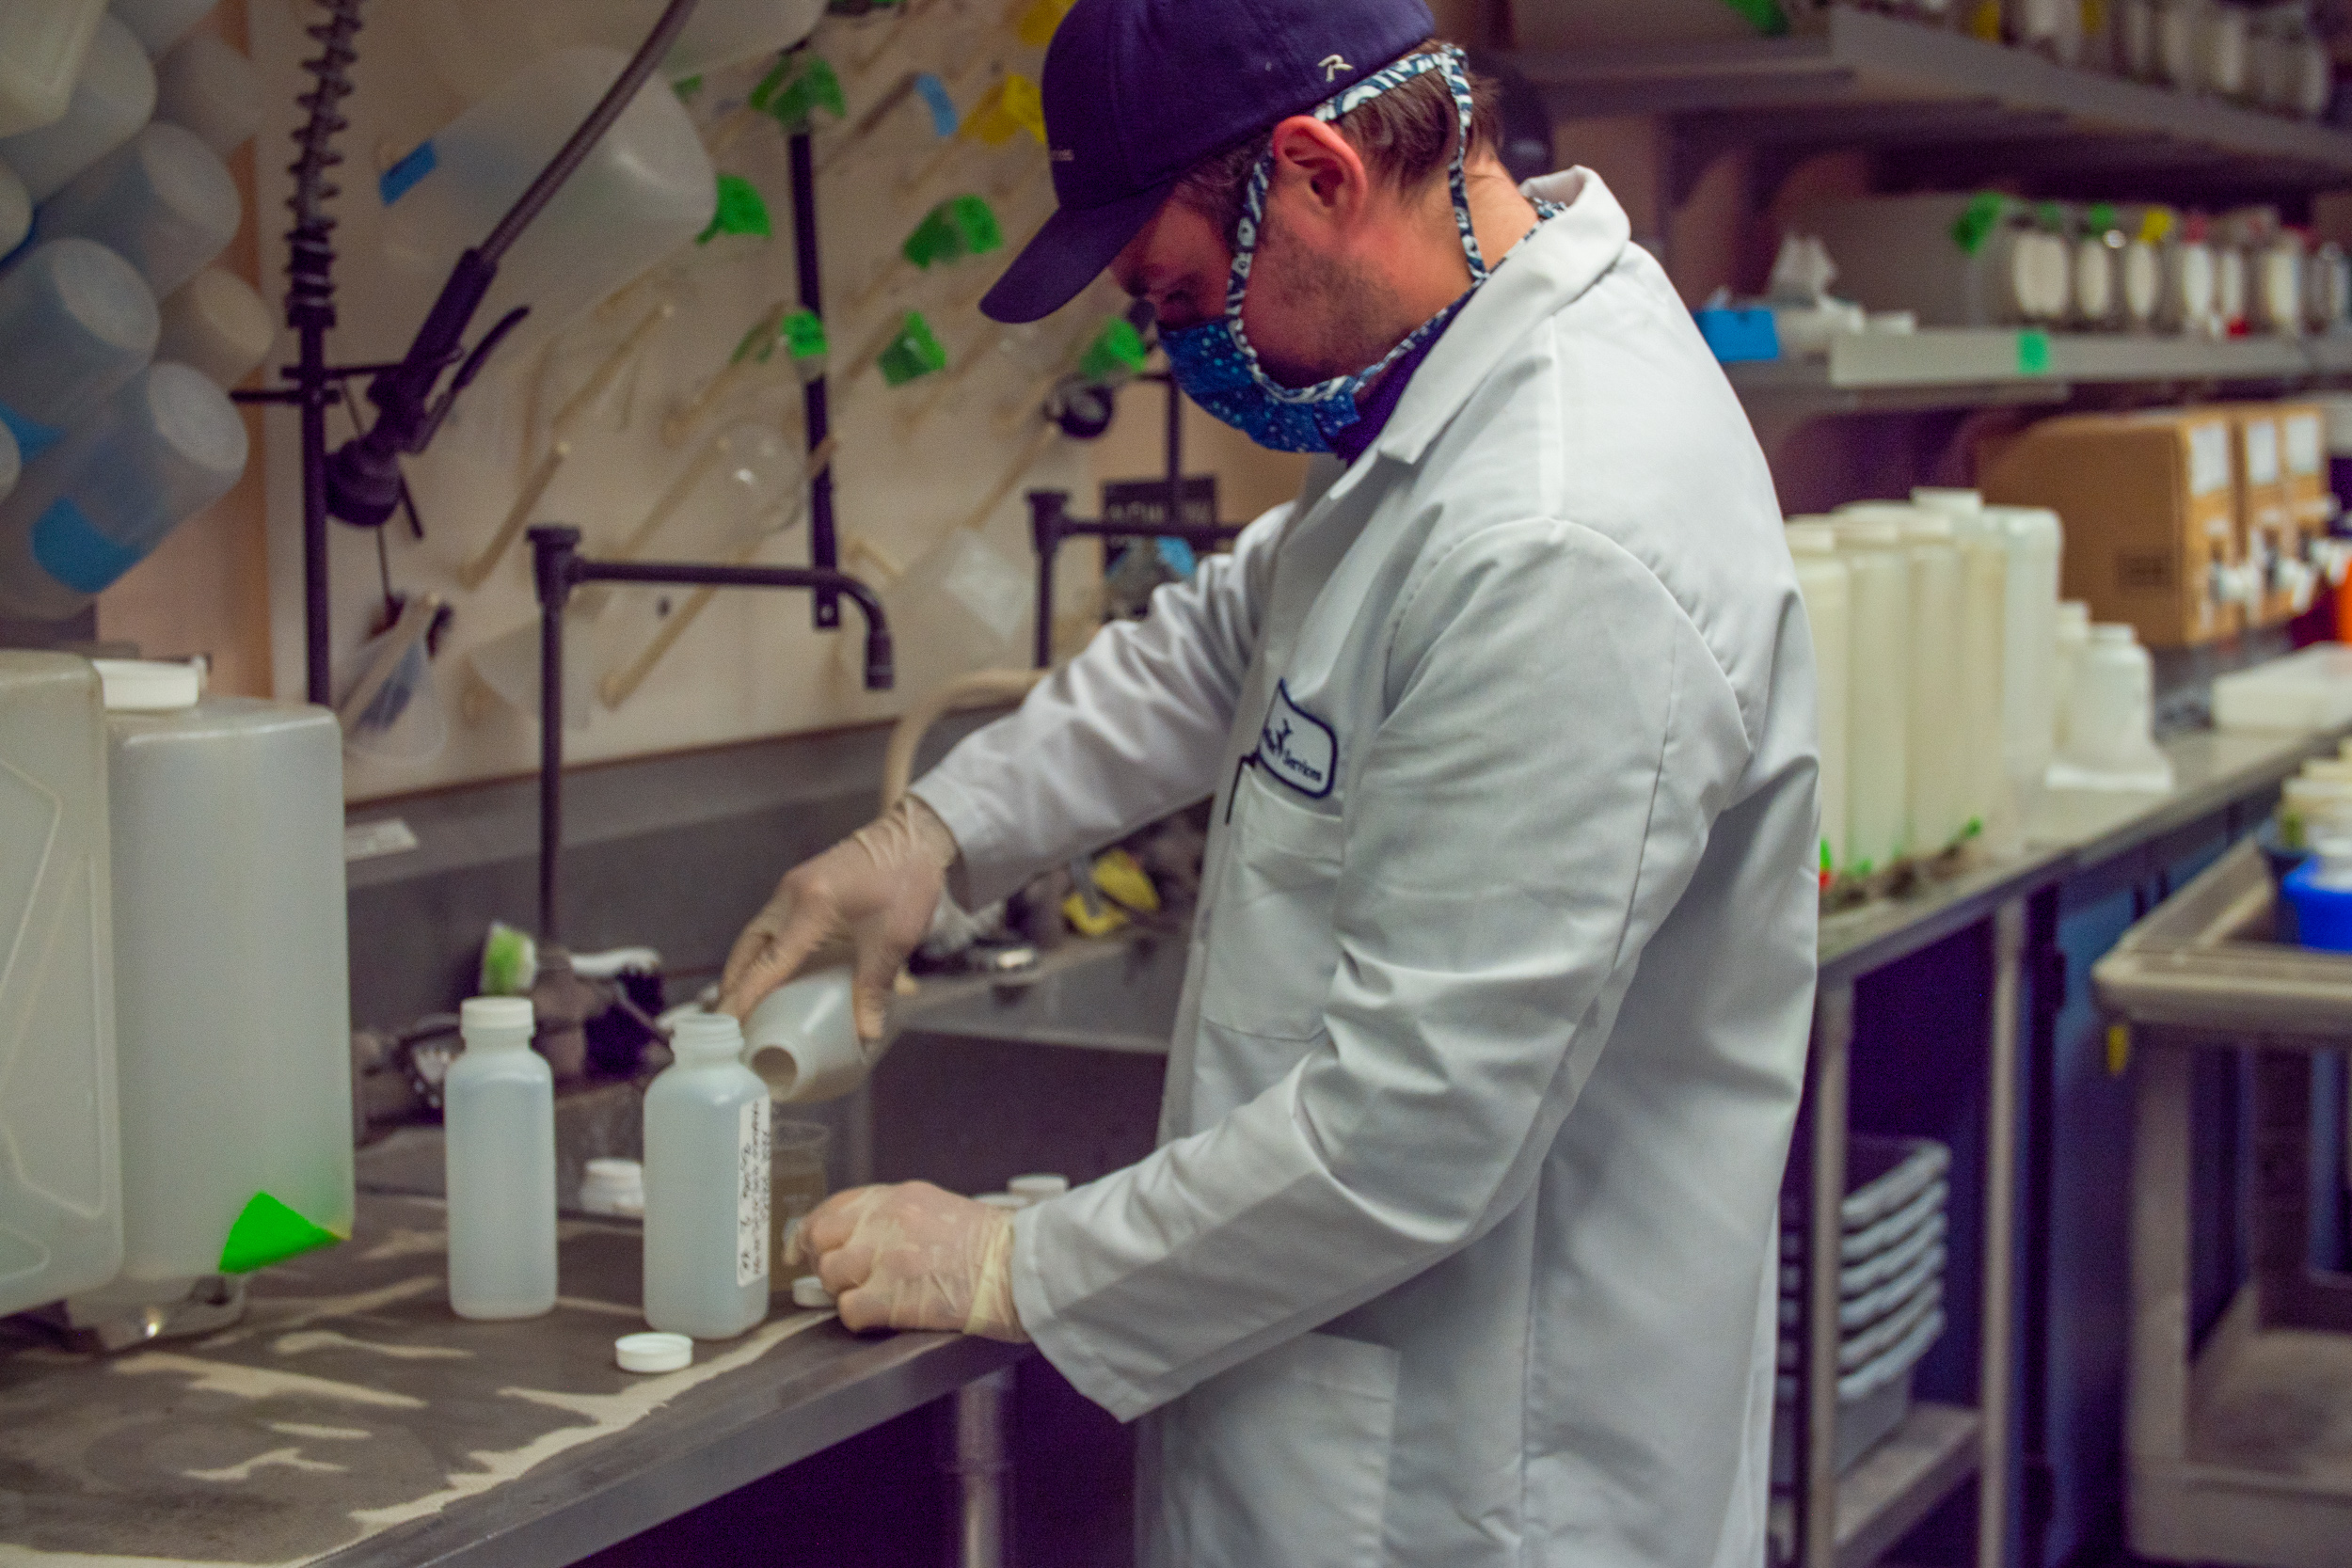 Un empleado de Clean Water Services trabajando en el laboratorio. El empleado lleva una bata blanca de laboratorio, una máscara protectora, guantes y una gorra de béisbol. Vierte el líquido en un vaso de cristal